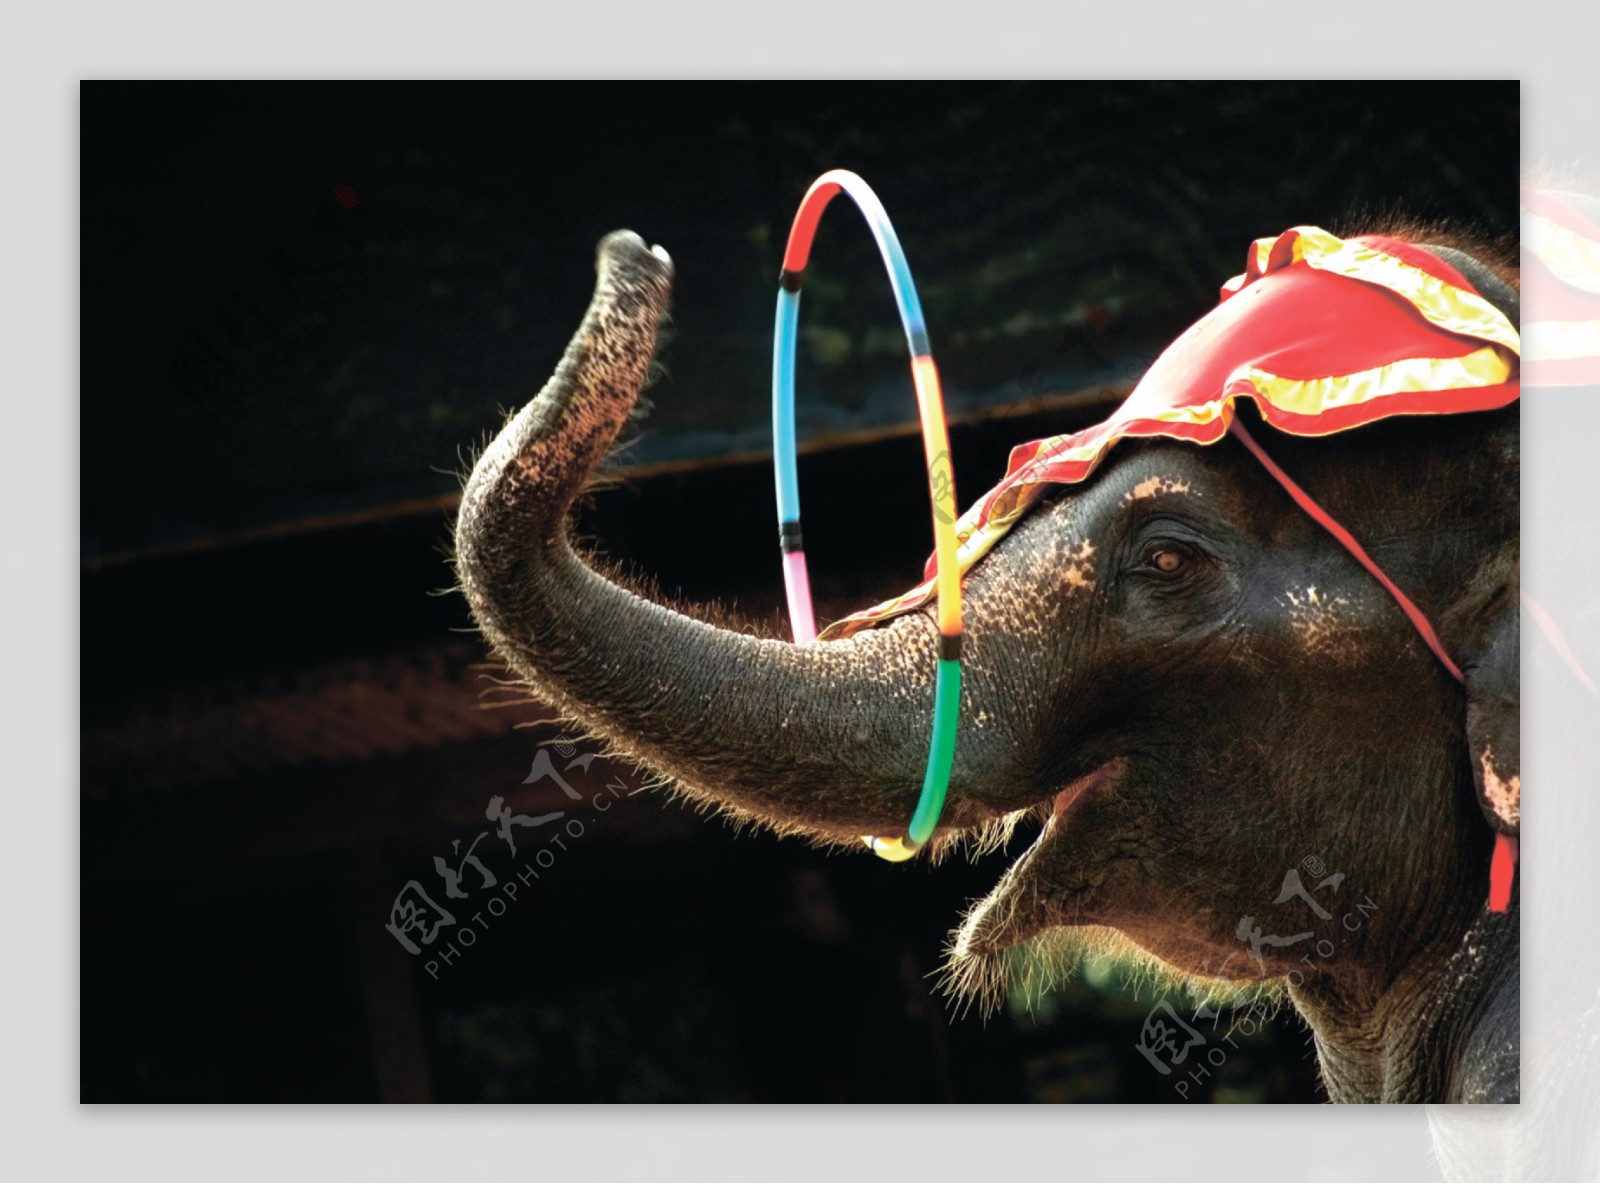 马戏团大象表演图片